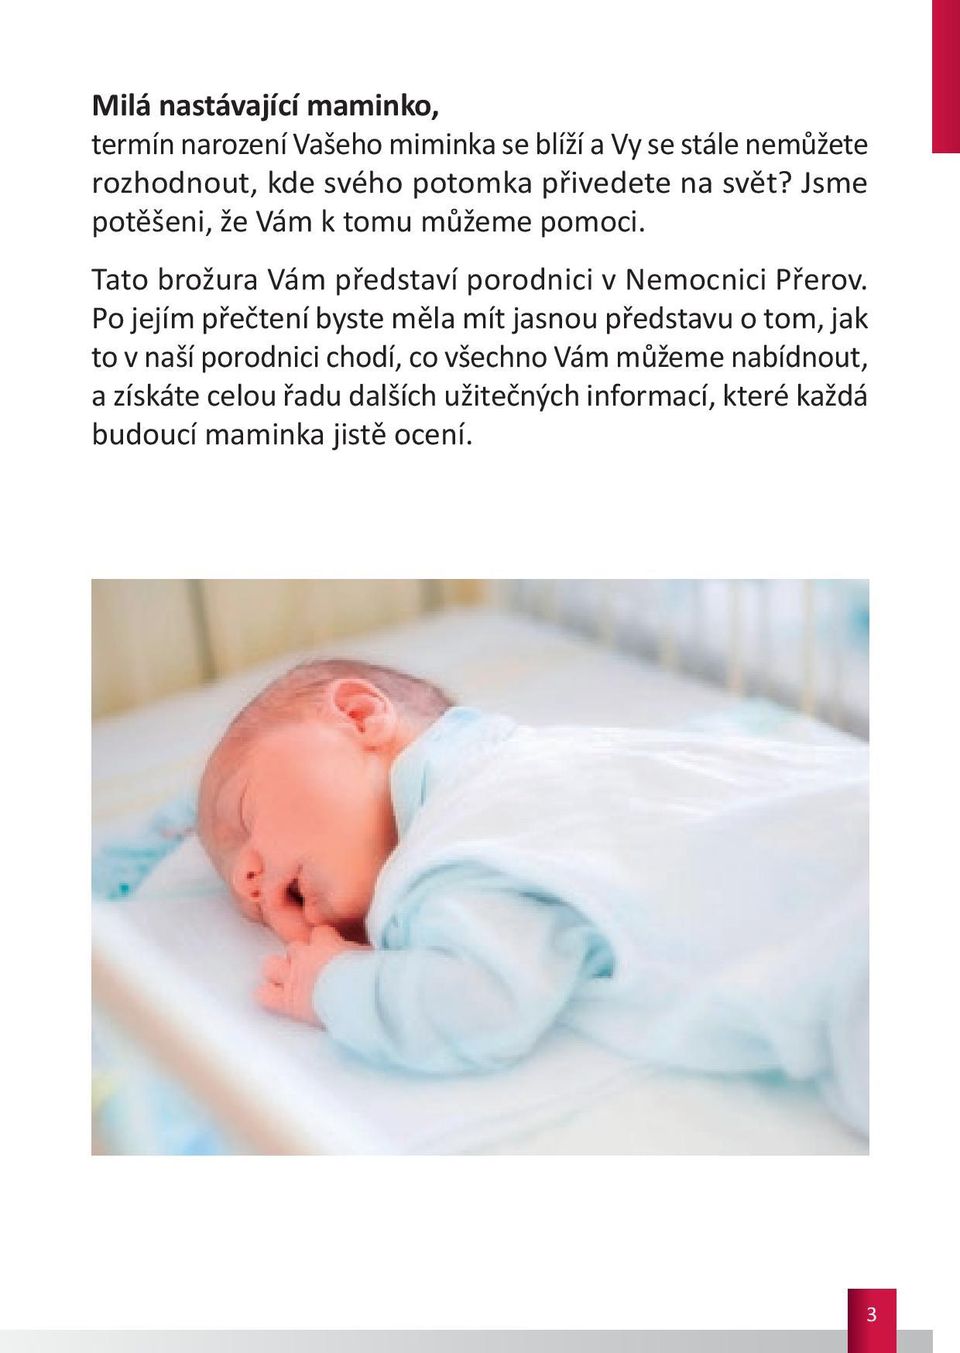 Tato brožura Vám představí porodnici v Nemocnici Přerov.